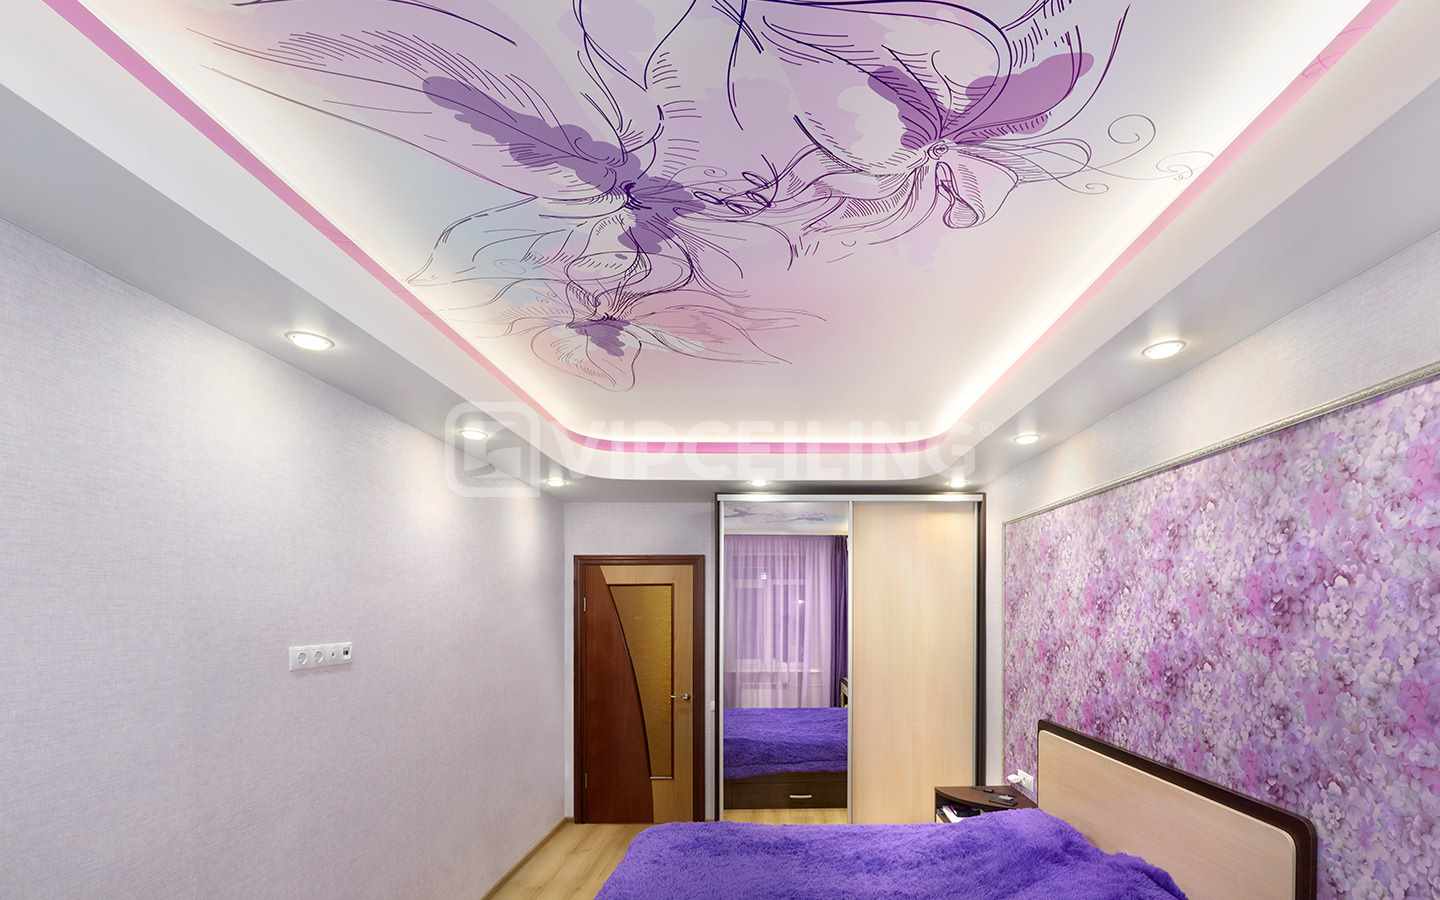 лила спаваћа соба